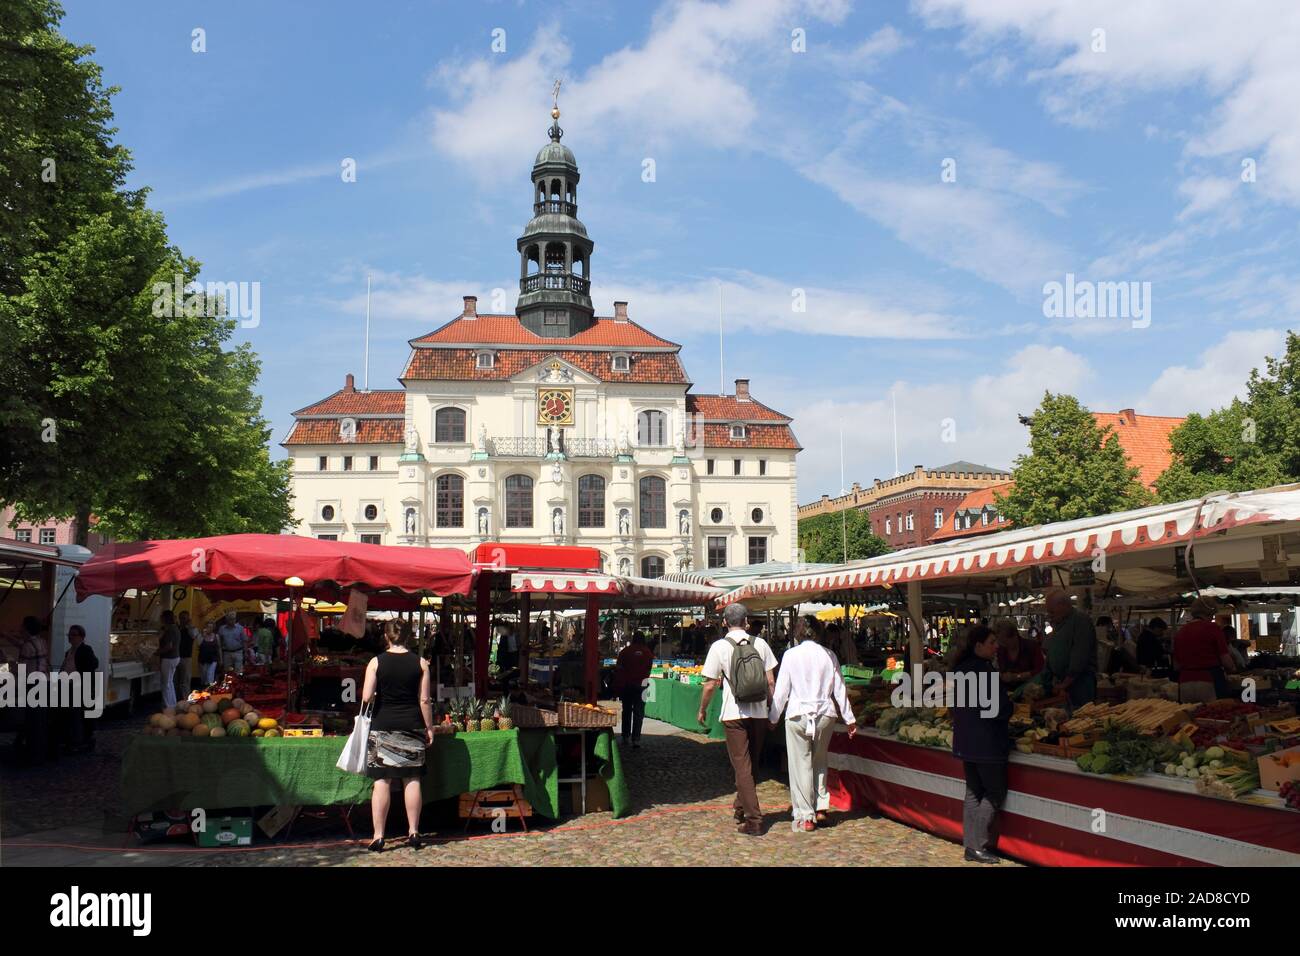 Markt am Rathaus Lüneburg Stockfoto